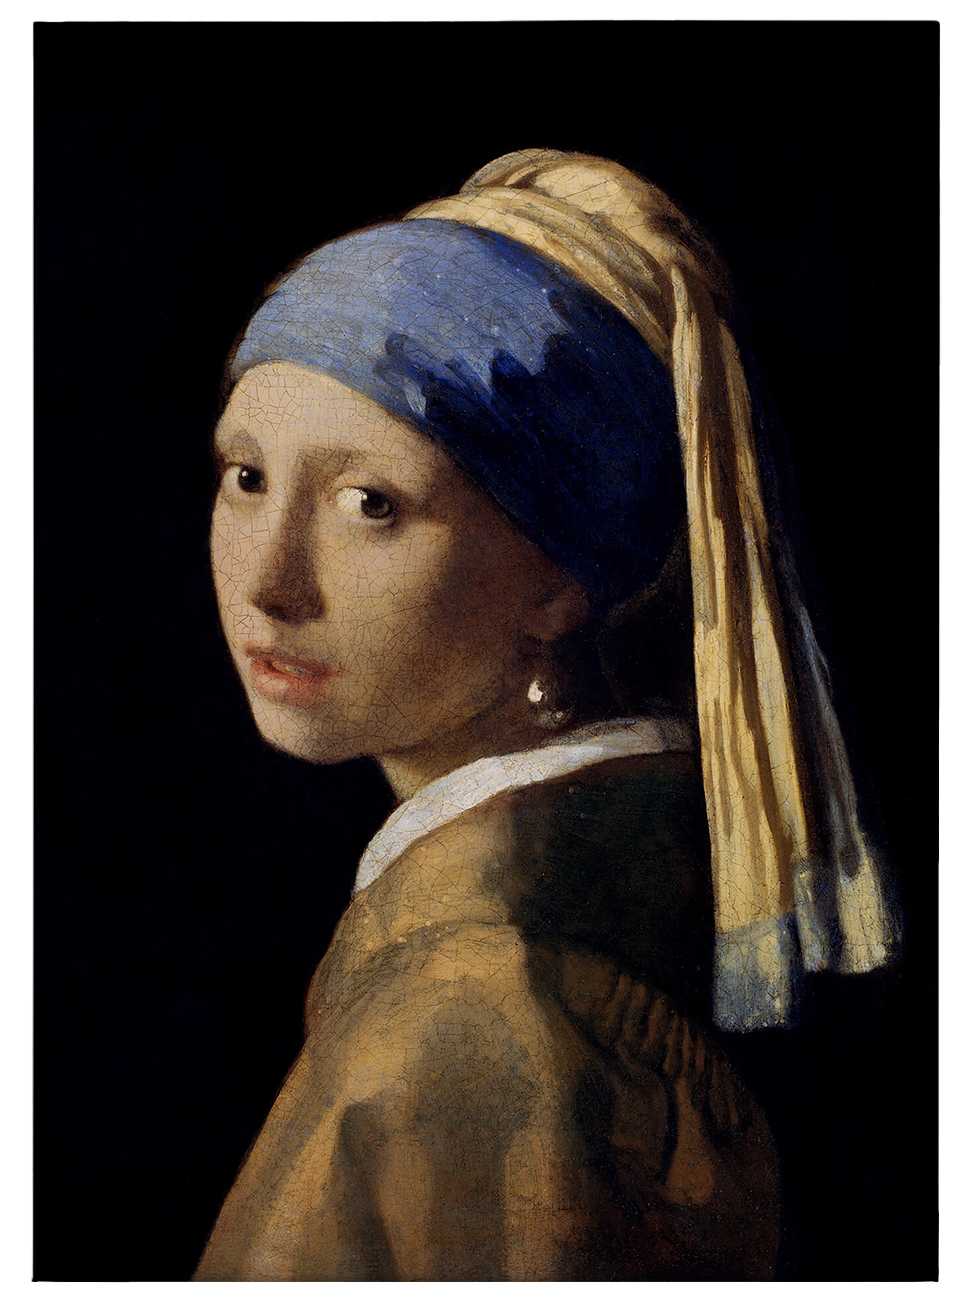             Canvas schilderij "Het meisje met de parel" van Dürer - 0.50 m x 0.70 m
        